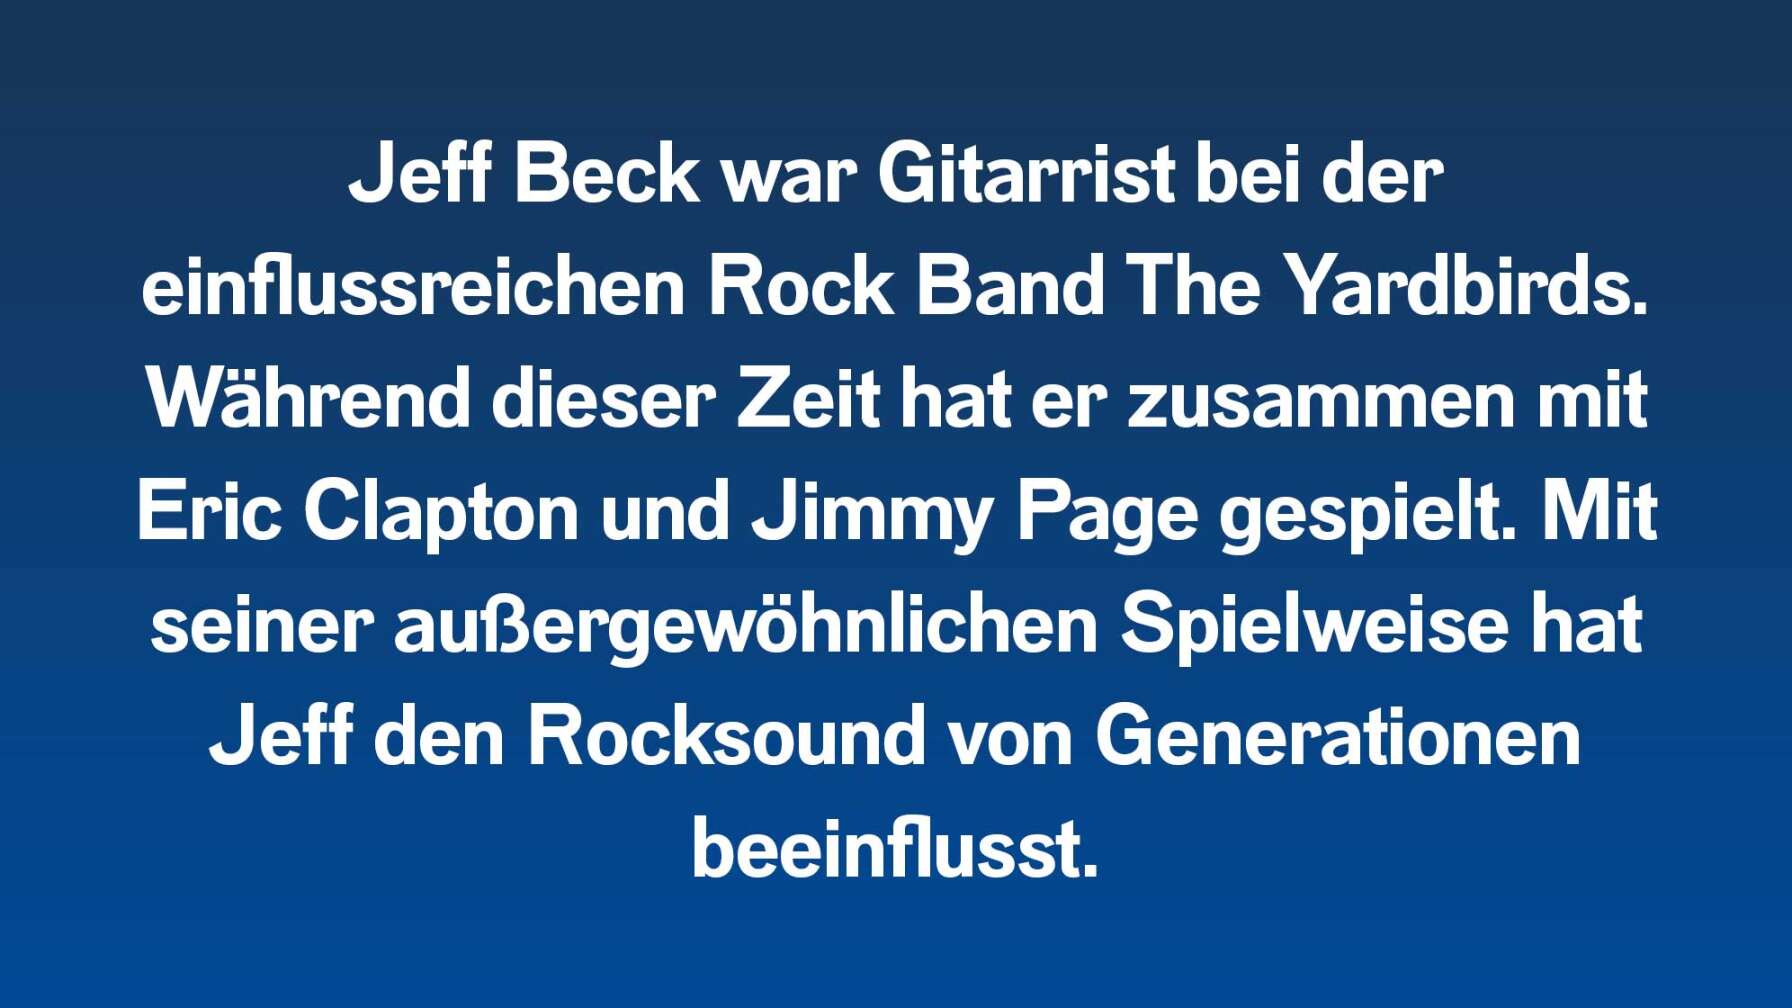 Jeff Beck war Gitarrist bei der einflussreichen Rock Band The Yardbirds. Während dieser Zeit hat er zusammen mit Eric Clapton und Jimmy Page gespielt. Mit seiner außergewöhnlichen Spielweise hat Jeff den Rocksound von Generationen beeinflusst.